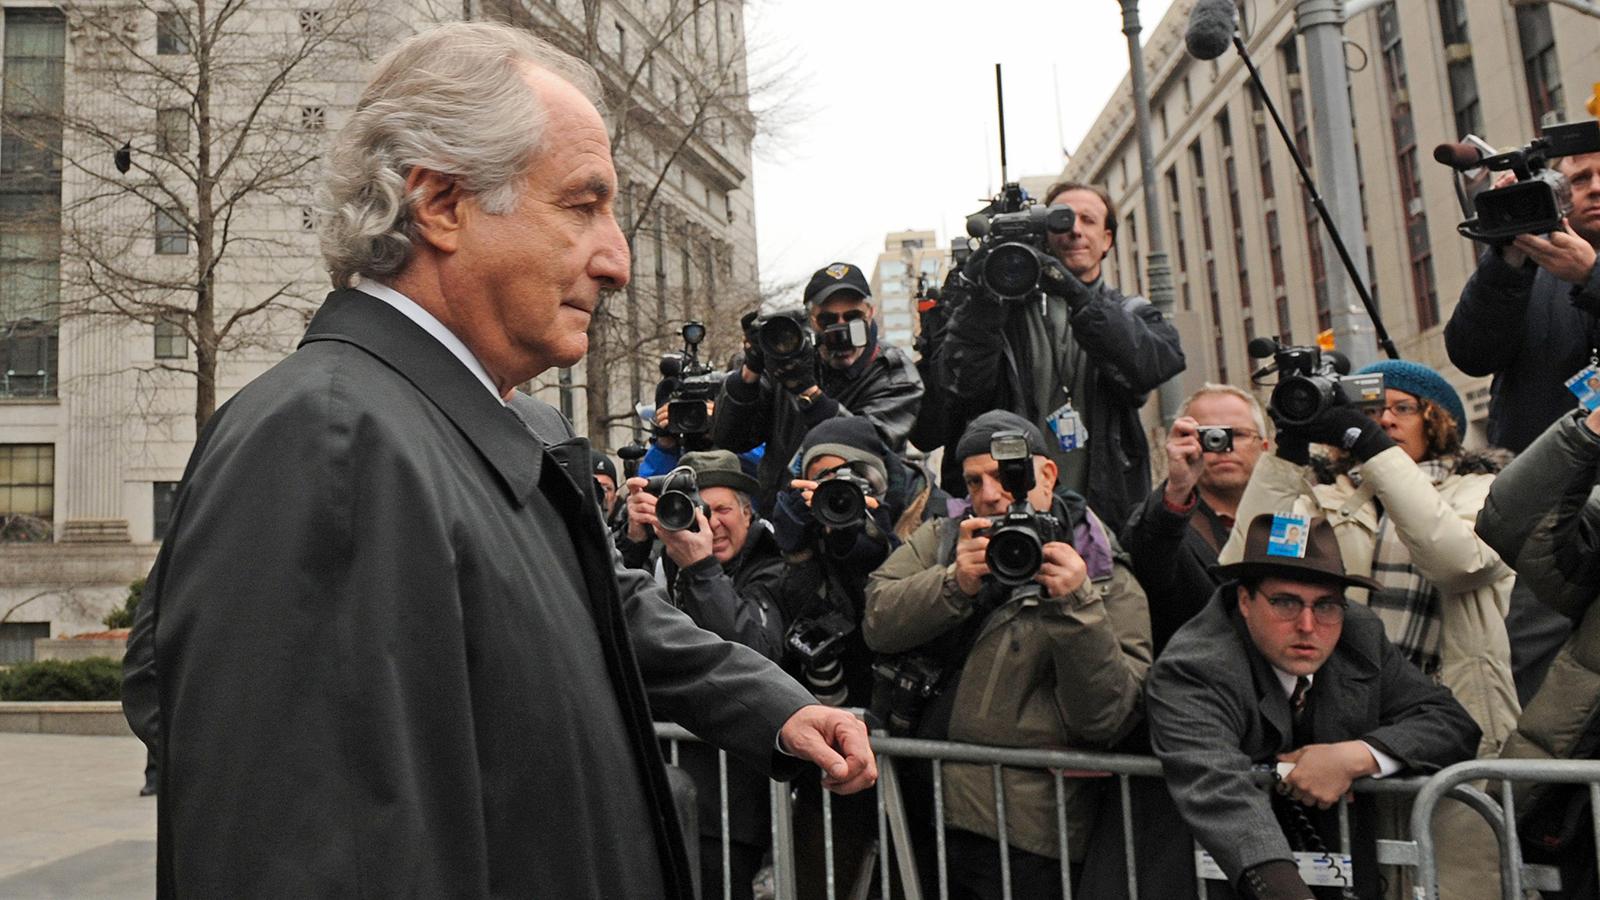 Kändisarna stod i kö för att låta Bernie Madoff investera deras miljoner. Men under finanskrisen 2008 avslöjades hans bluff och han dömdes till 150 års fängelse.